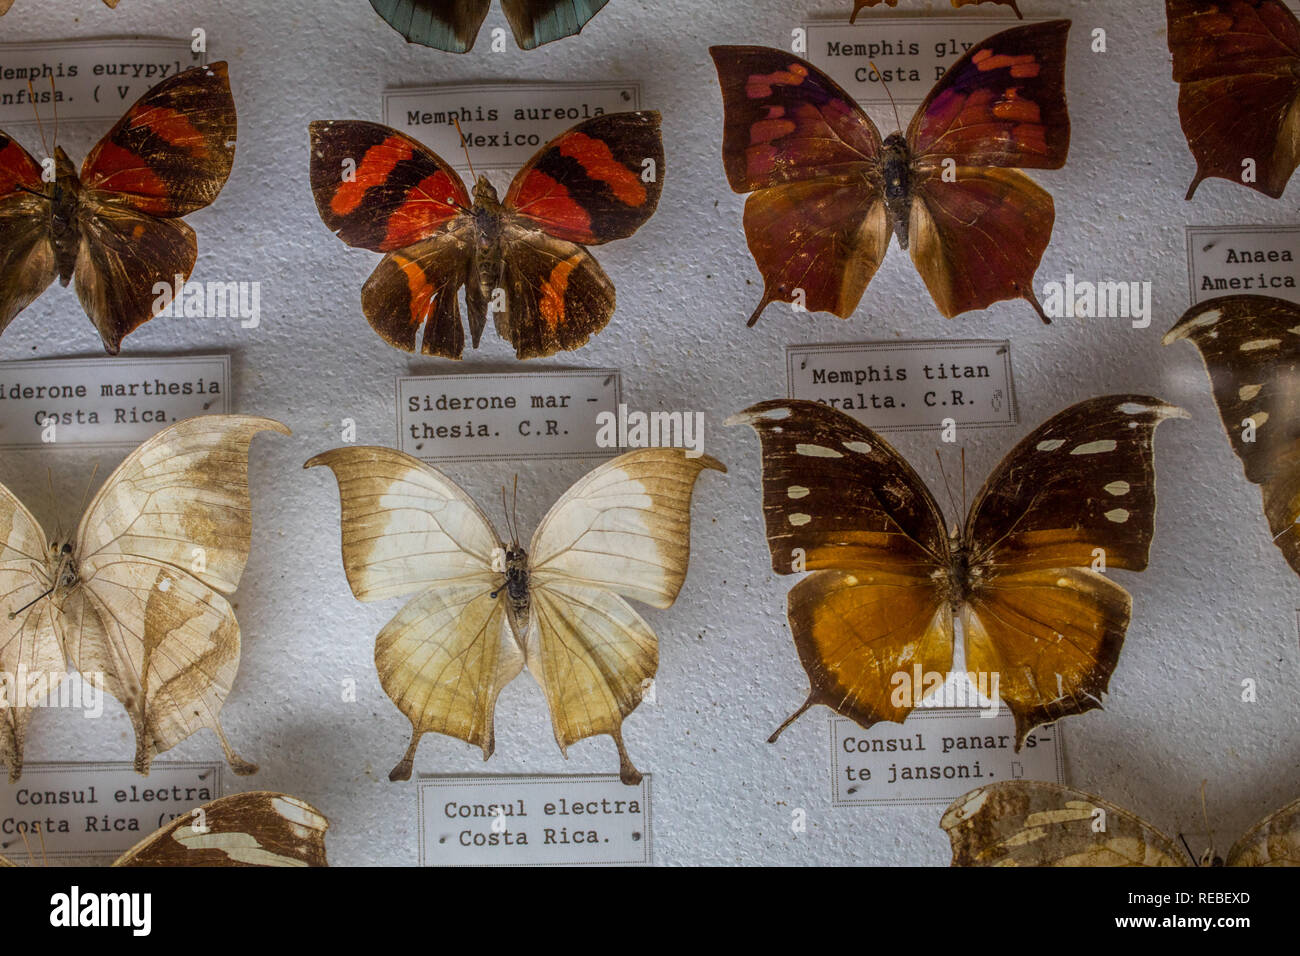 Eine entomologische Sammlung schöner festgesteckt Schmetterlinge im Natural History Museum. Mit Umgangsformen für Identifikation. Stockfoto